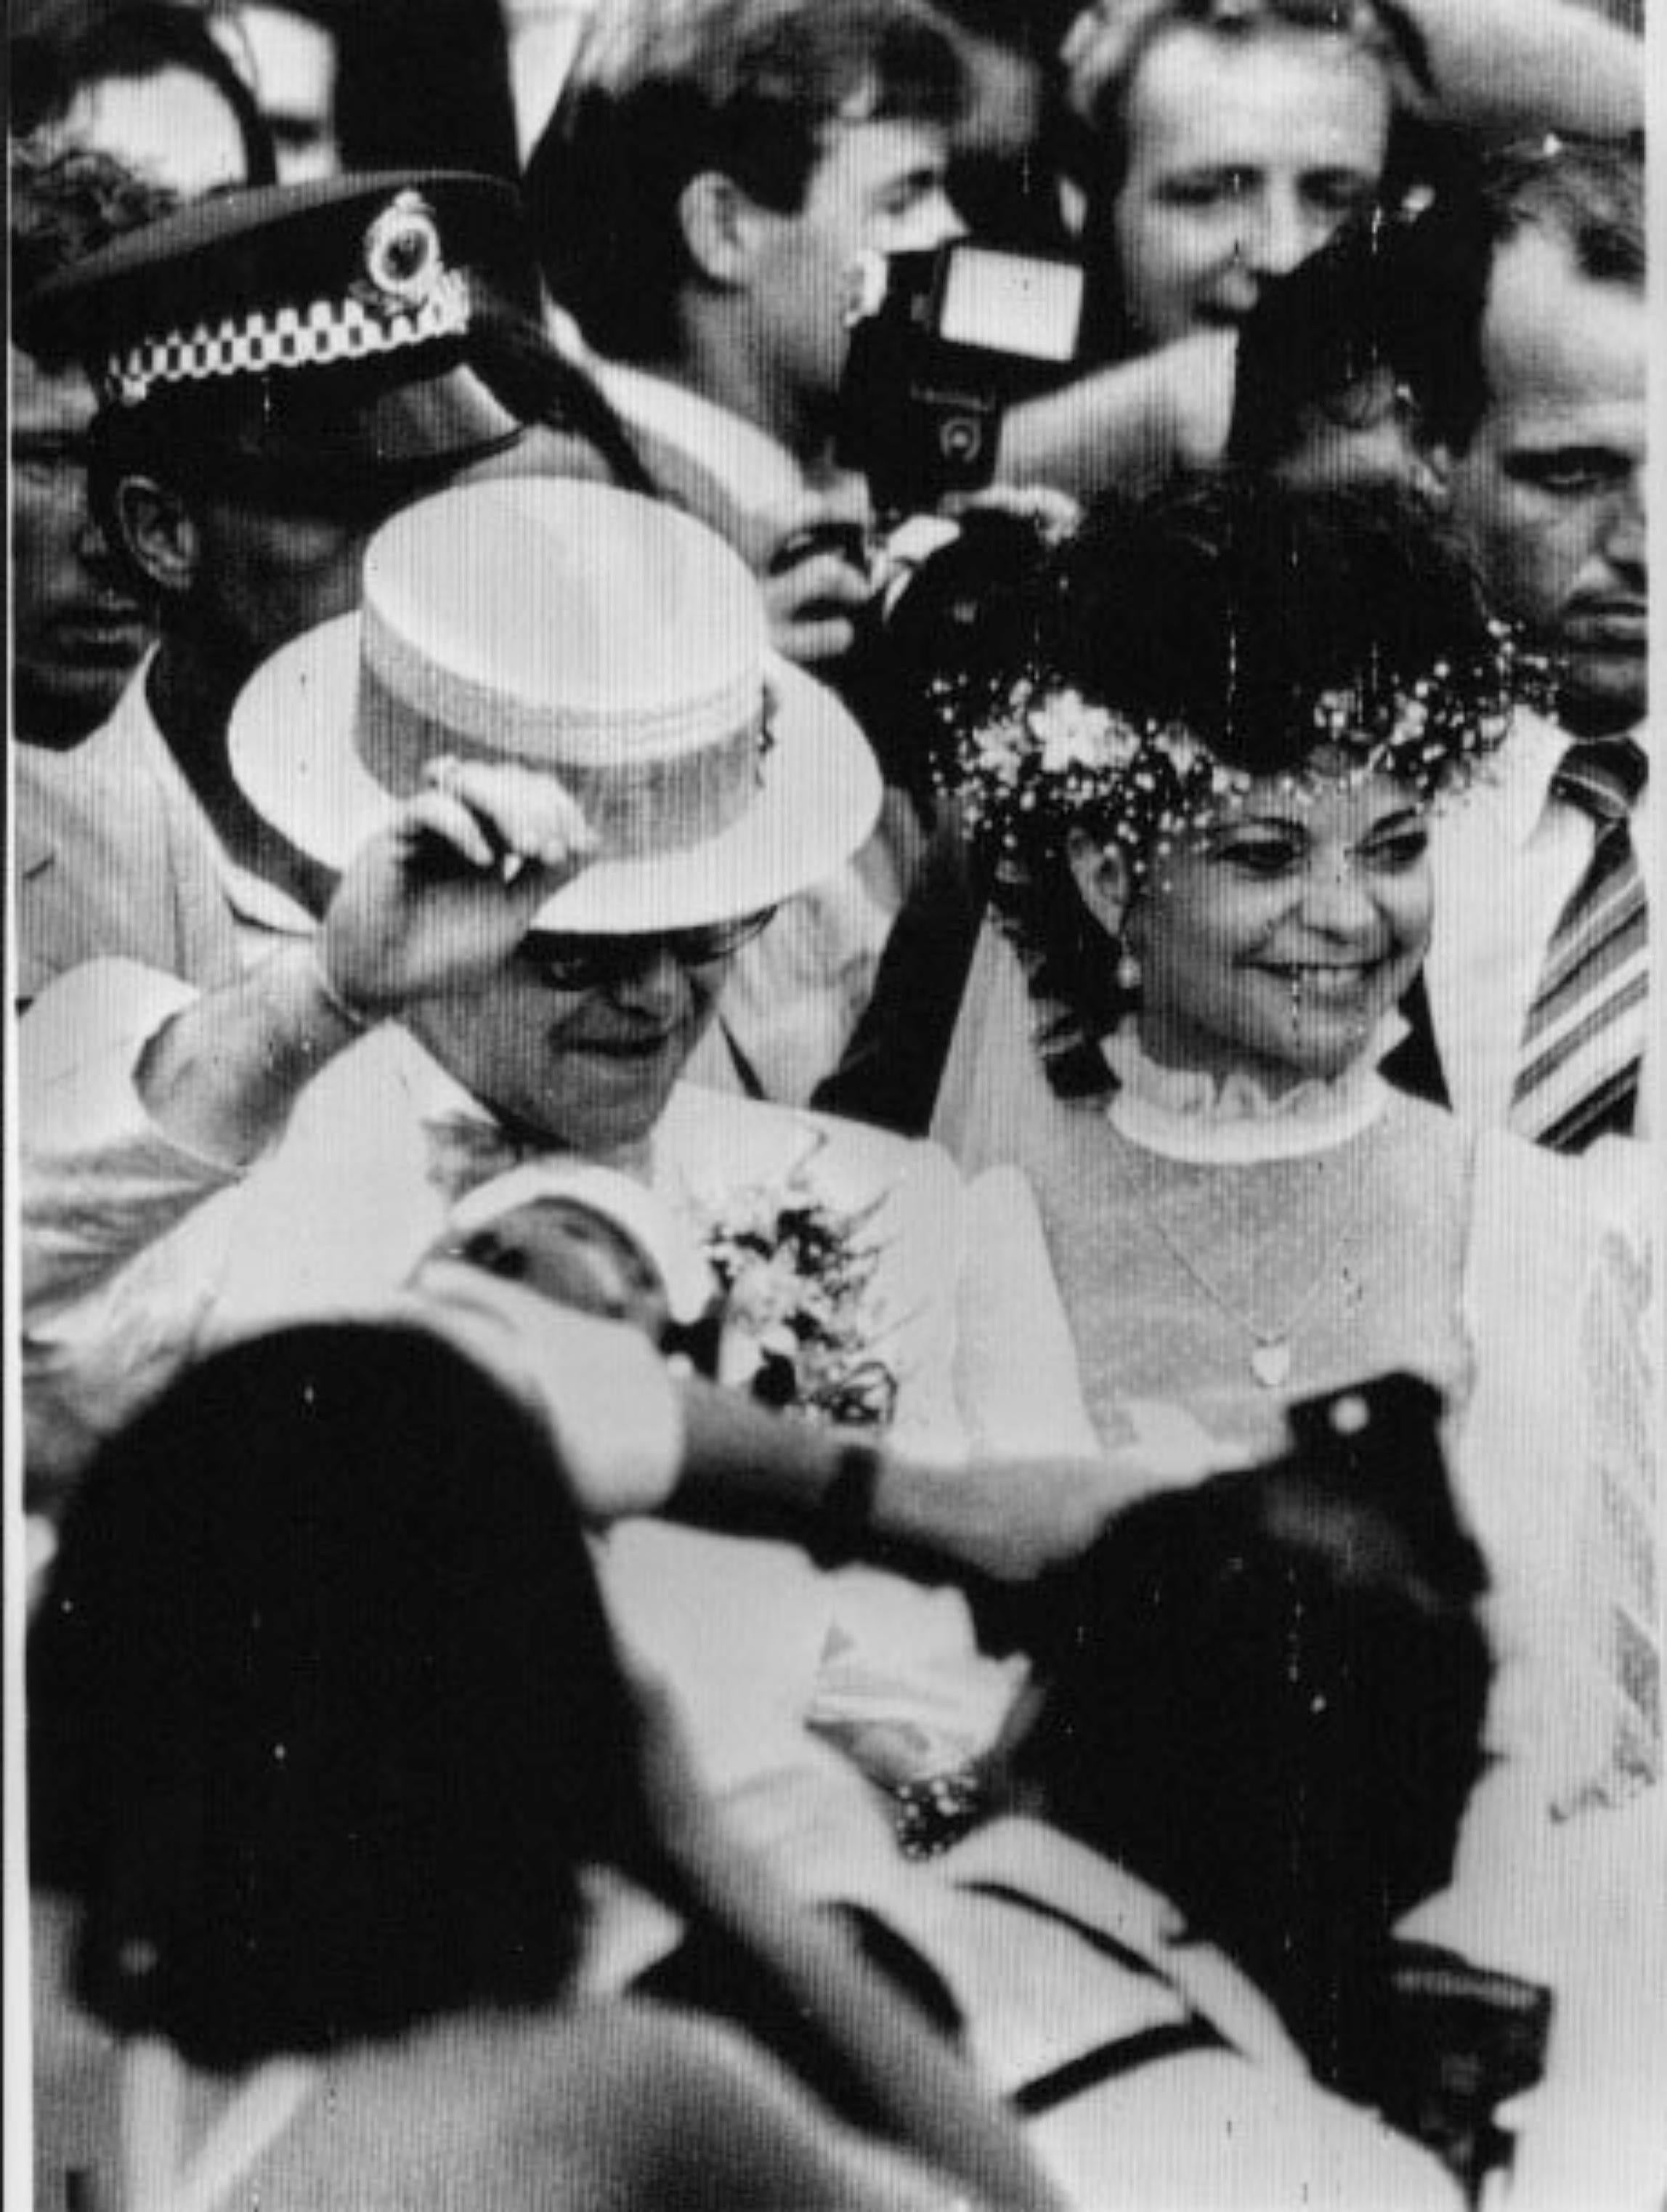 Figurative Photograph Unknown - Elton John et le premier mari avec Renate Blauel - Photo vintage, années 1980